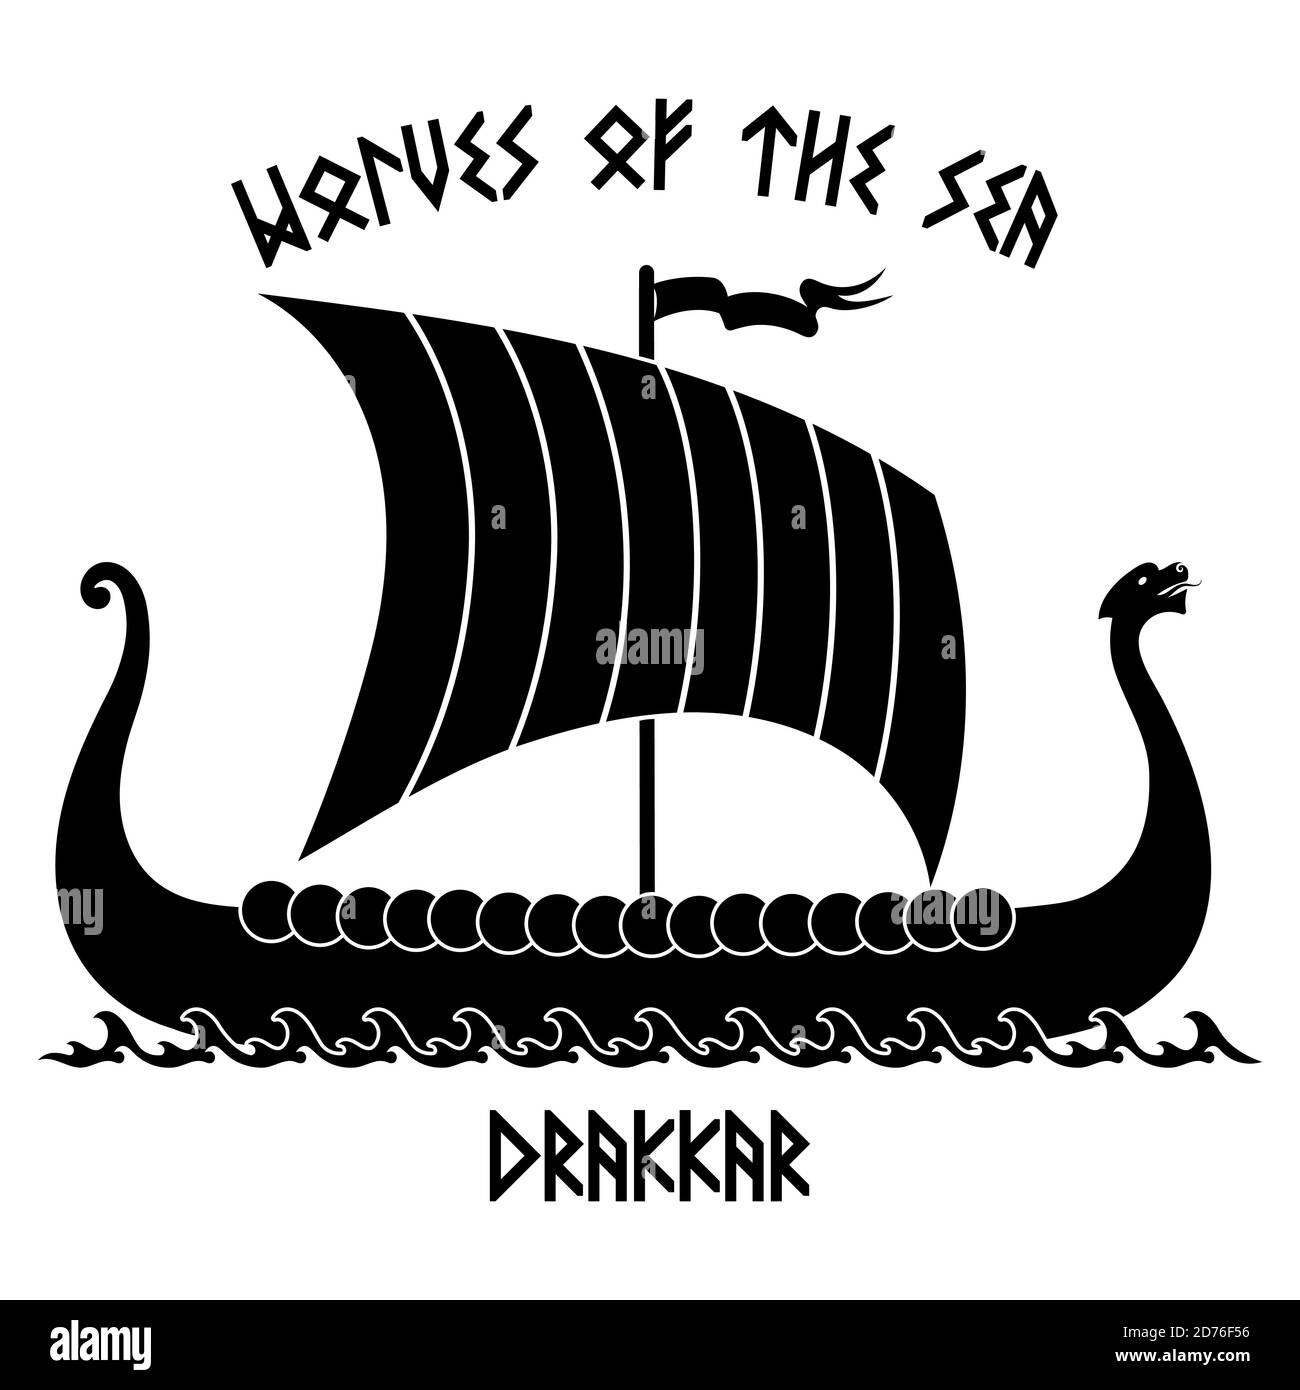 Un'antica immagine scandinava di una nave vichinga Drakkar Illustrazione Vettoriale